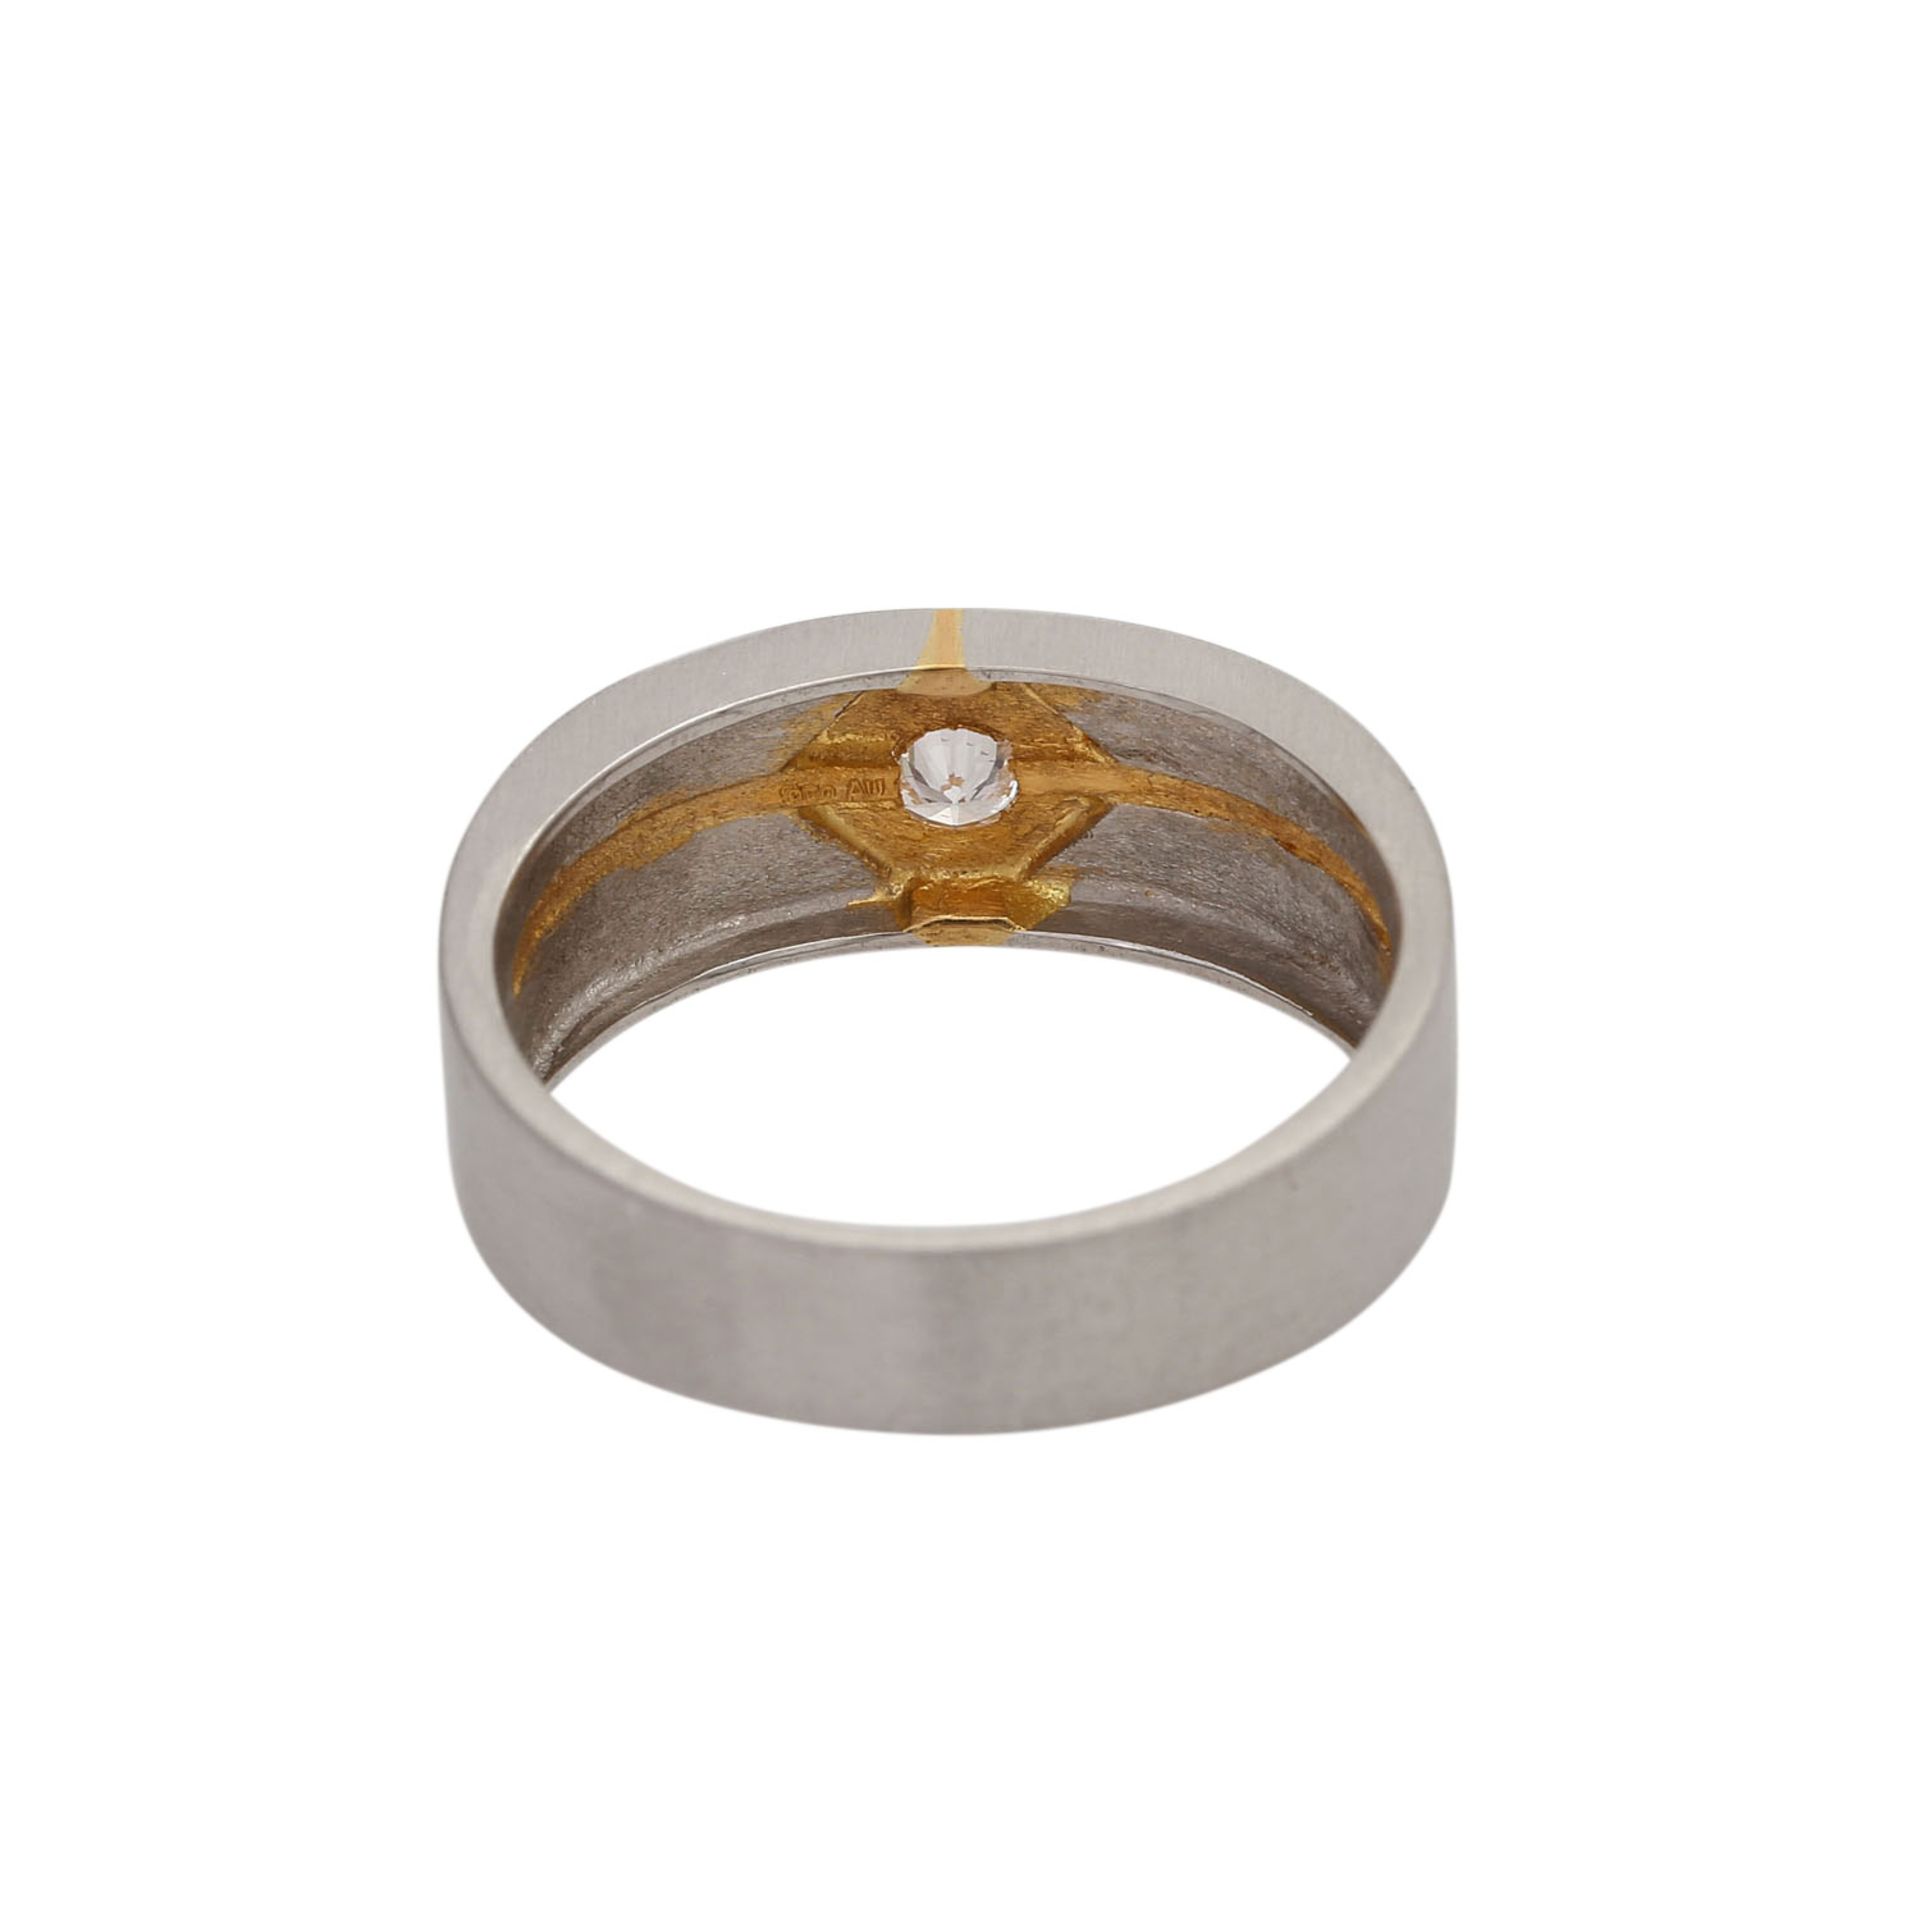 Ring mit 1 Brillant ca. 0,16 ct(grav.), WEIß (H)/VVS, Platin, Details in Gold. RW: ca. 60. 1980/90er - Bild 4 aus 4